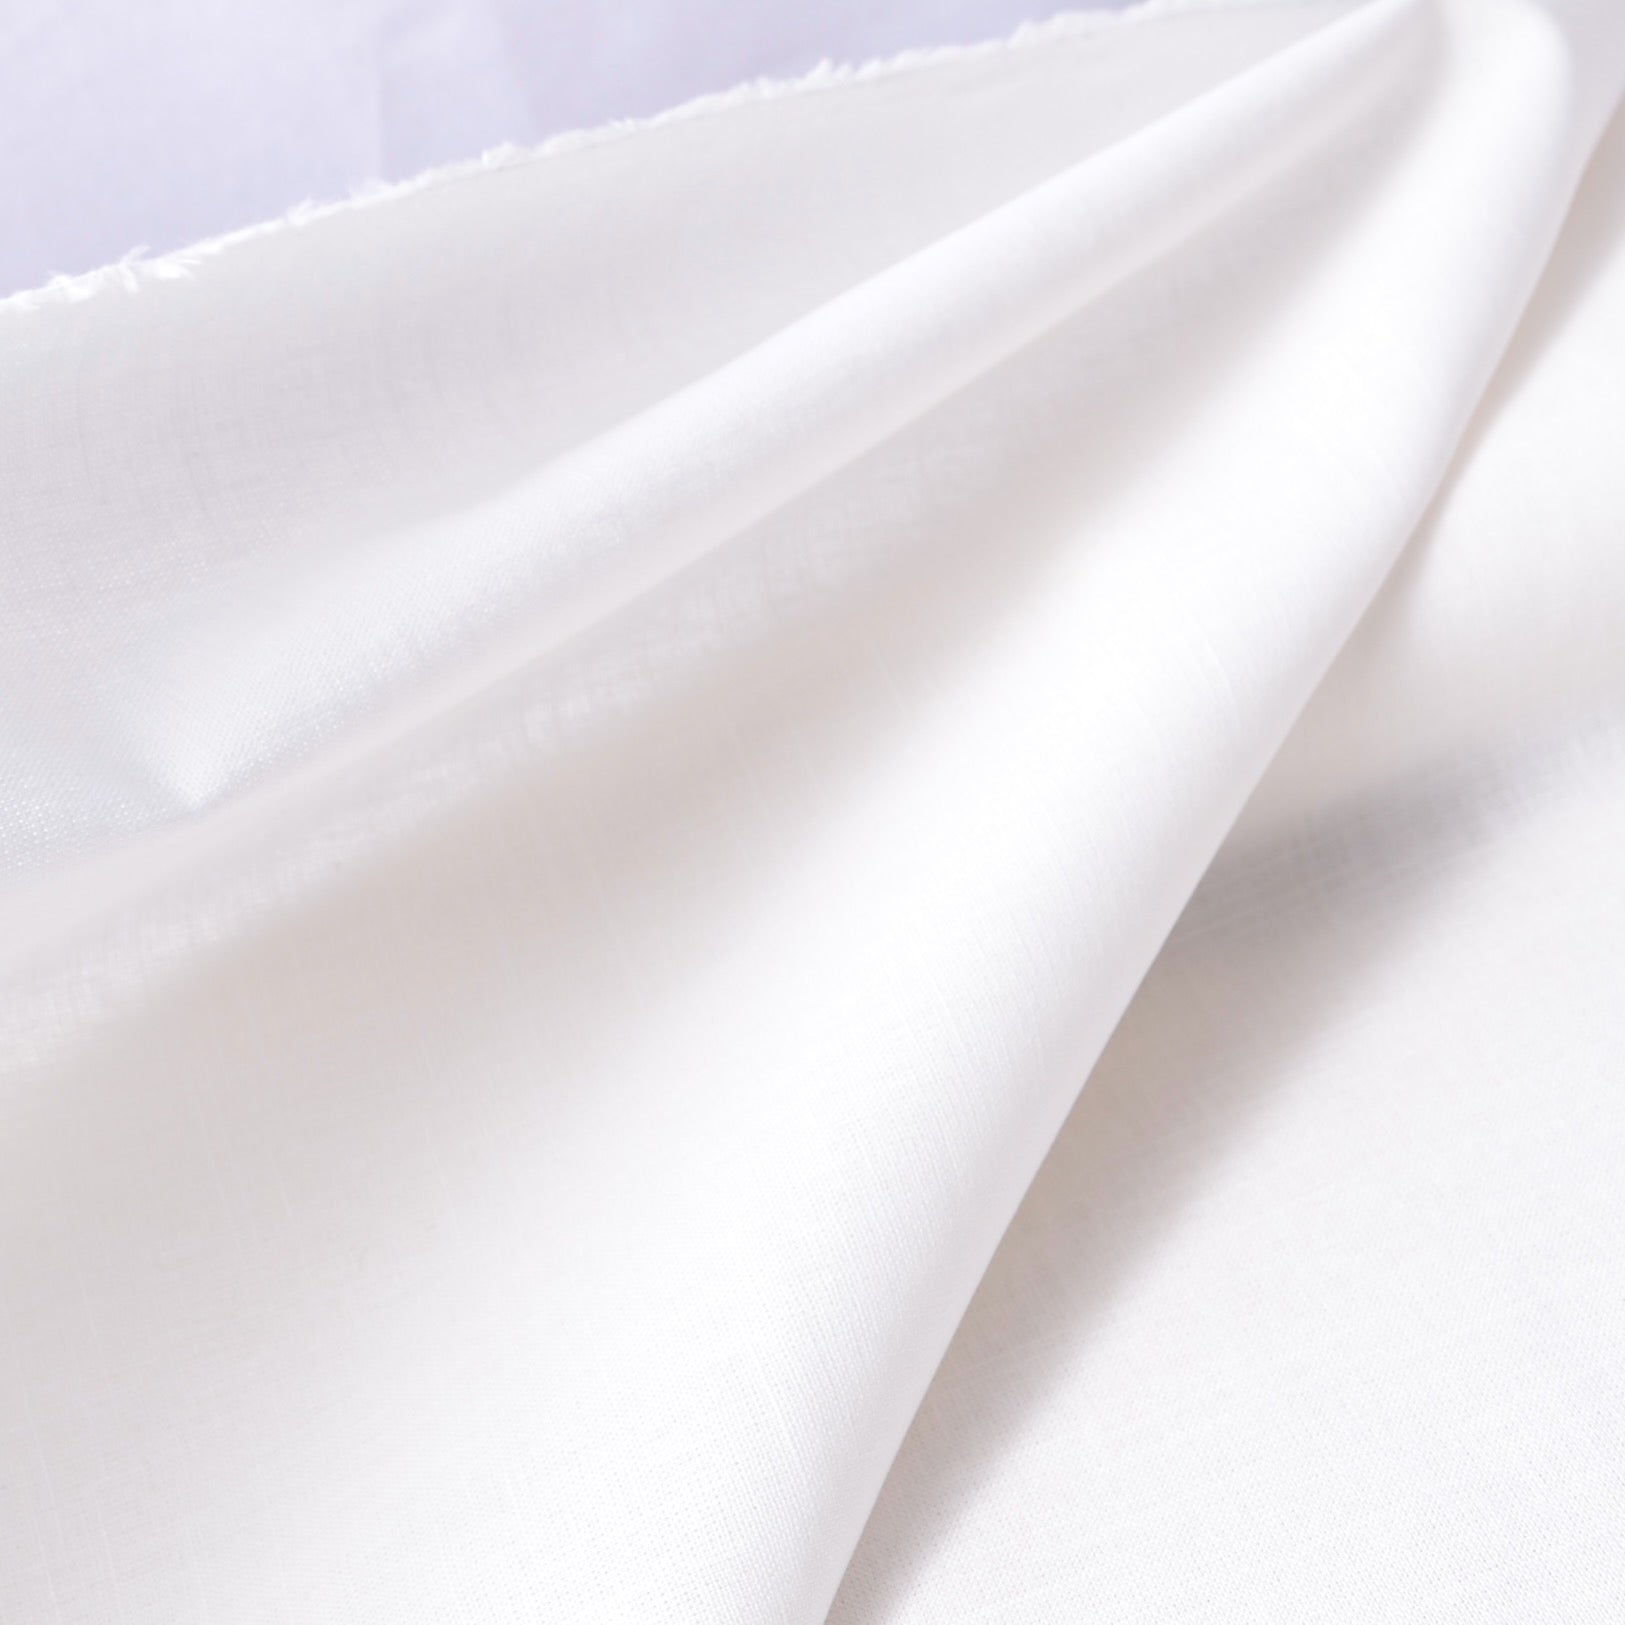 white cotton stitching and sdwing fabric